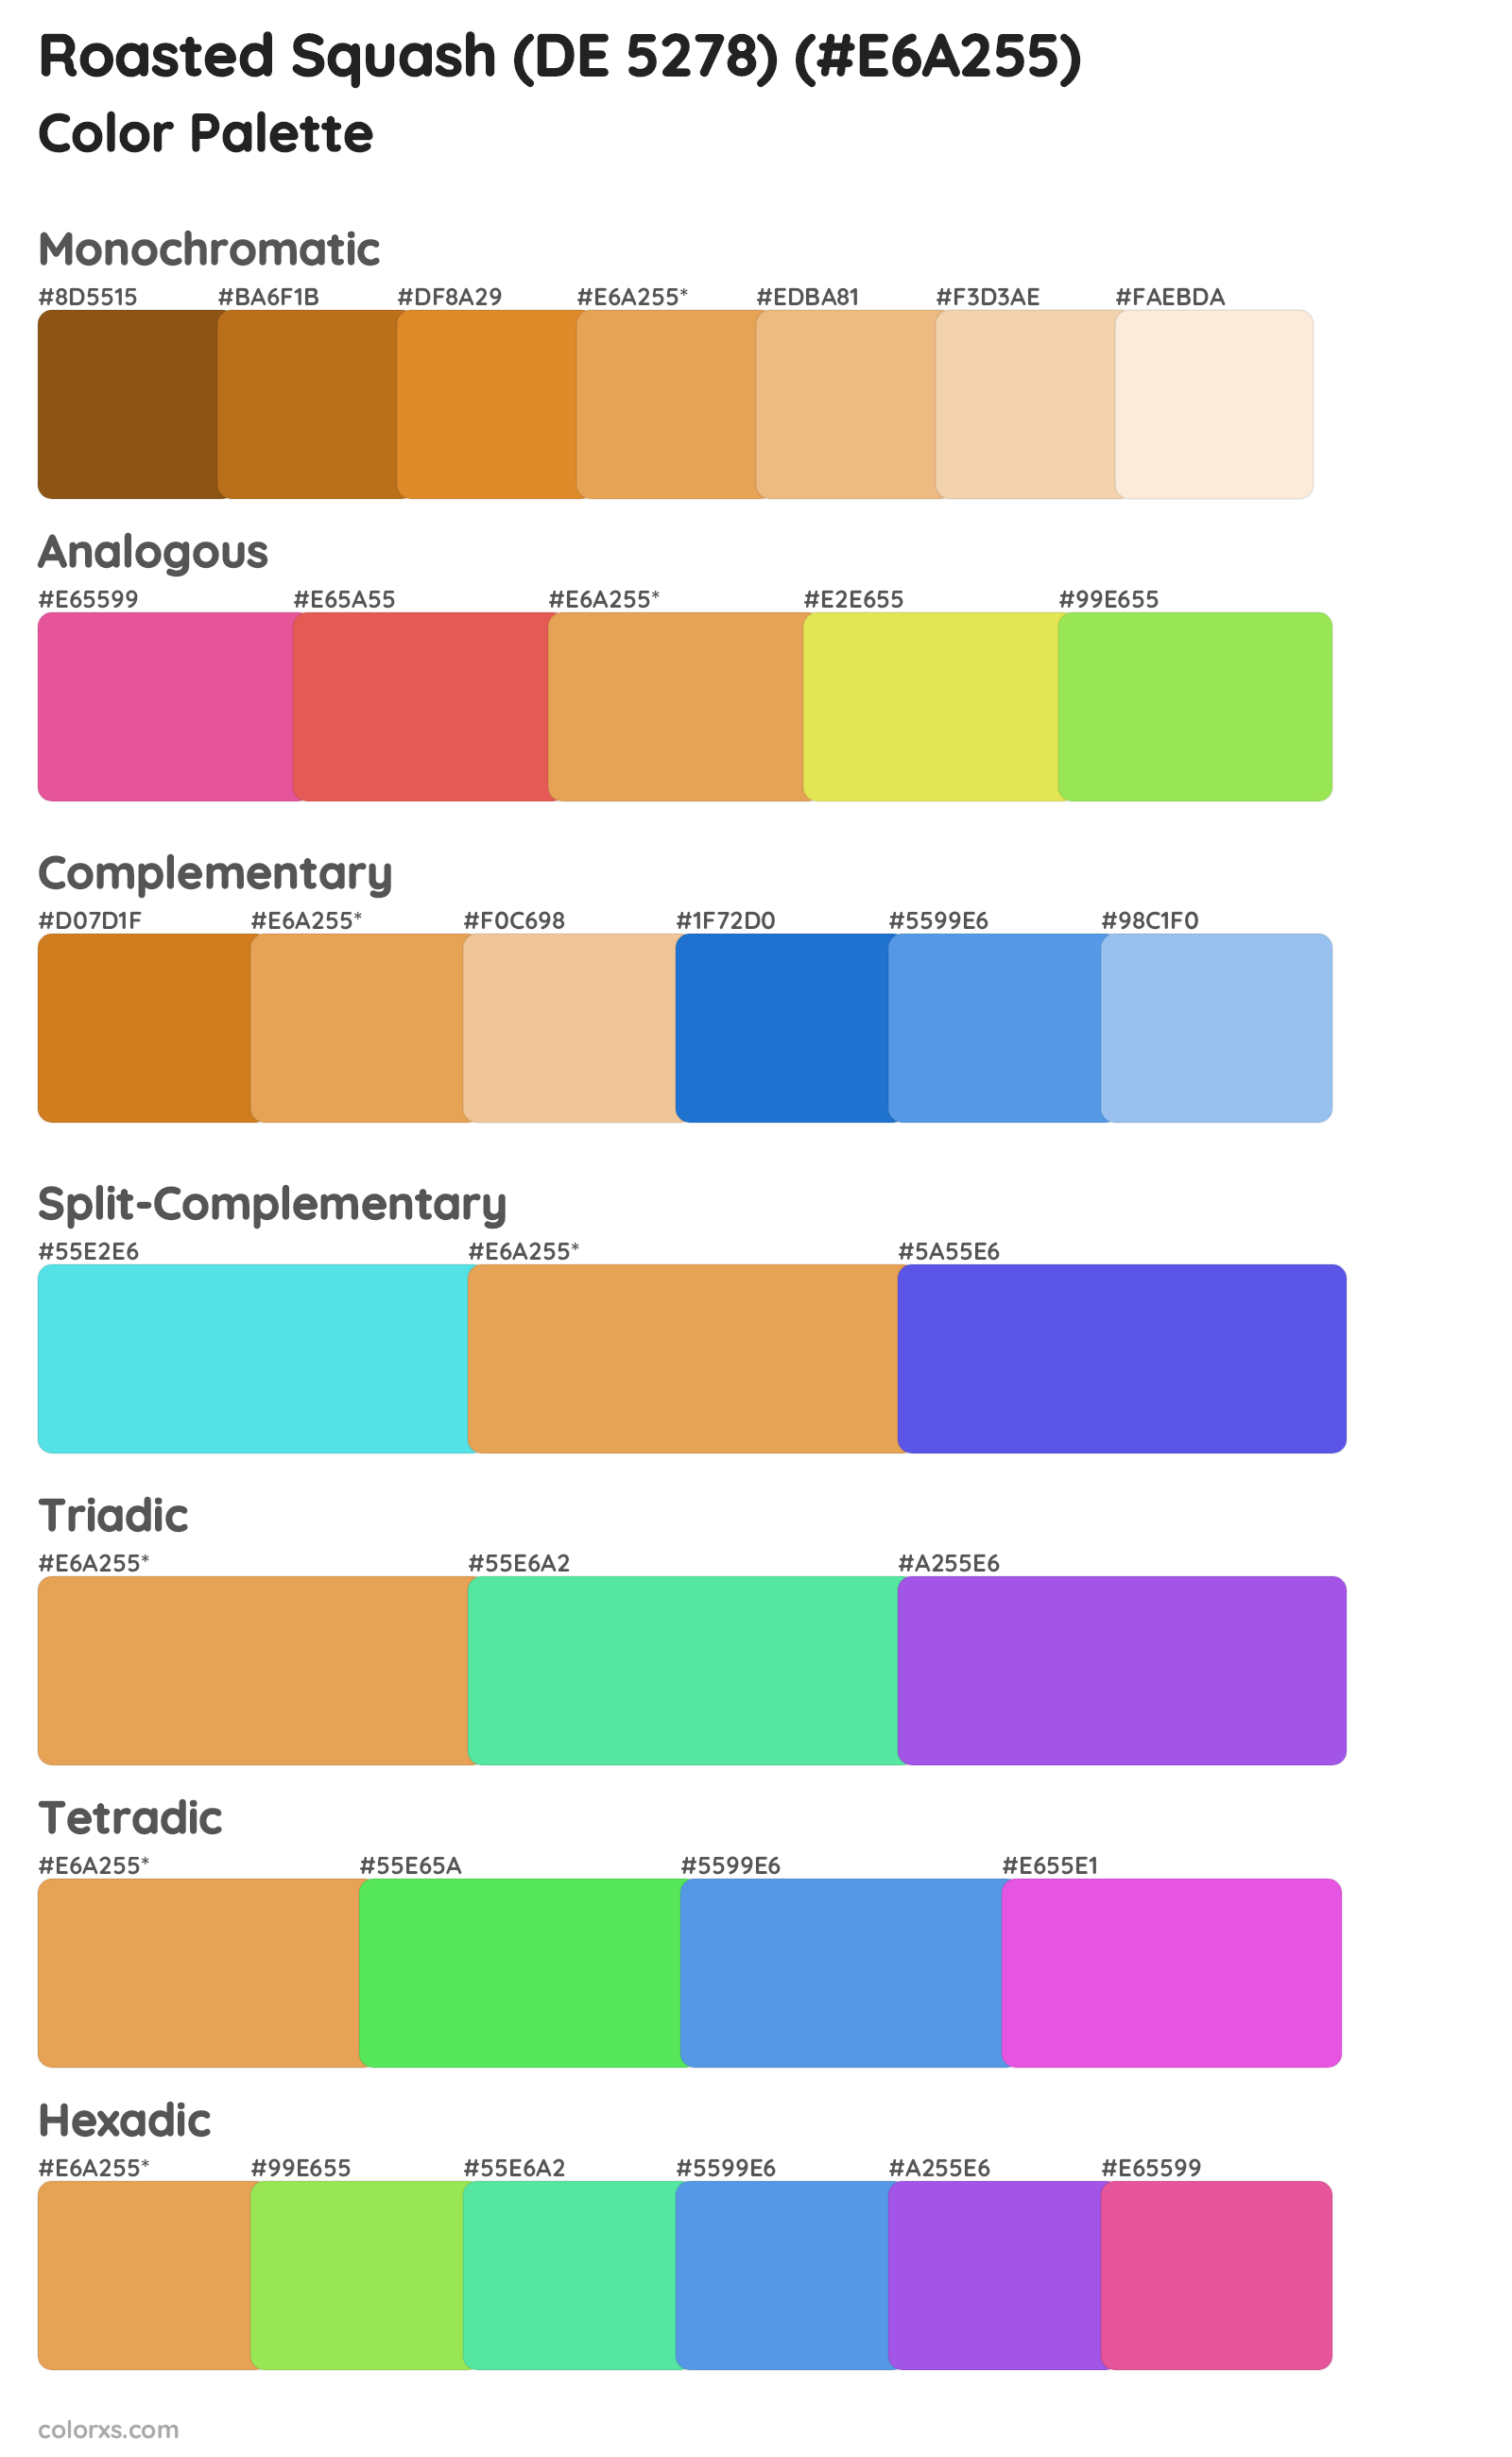 Roasted Squash (DE 5278) Color Scheme Palettes